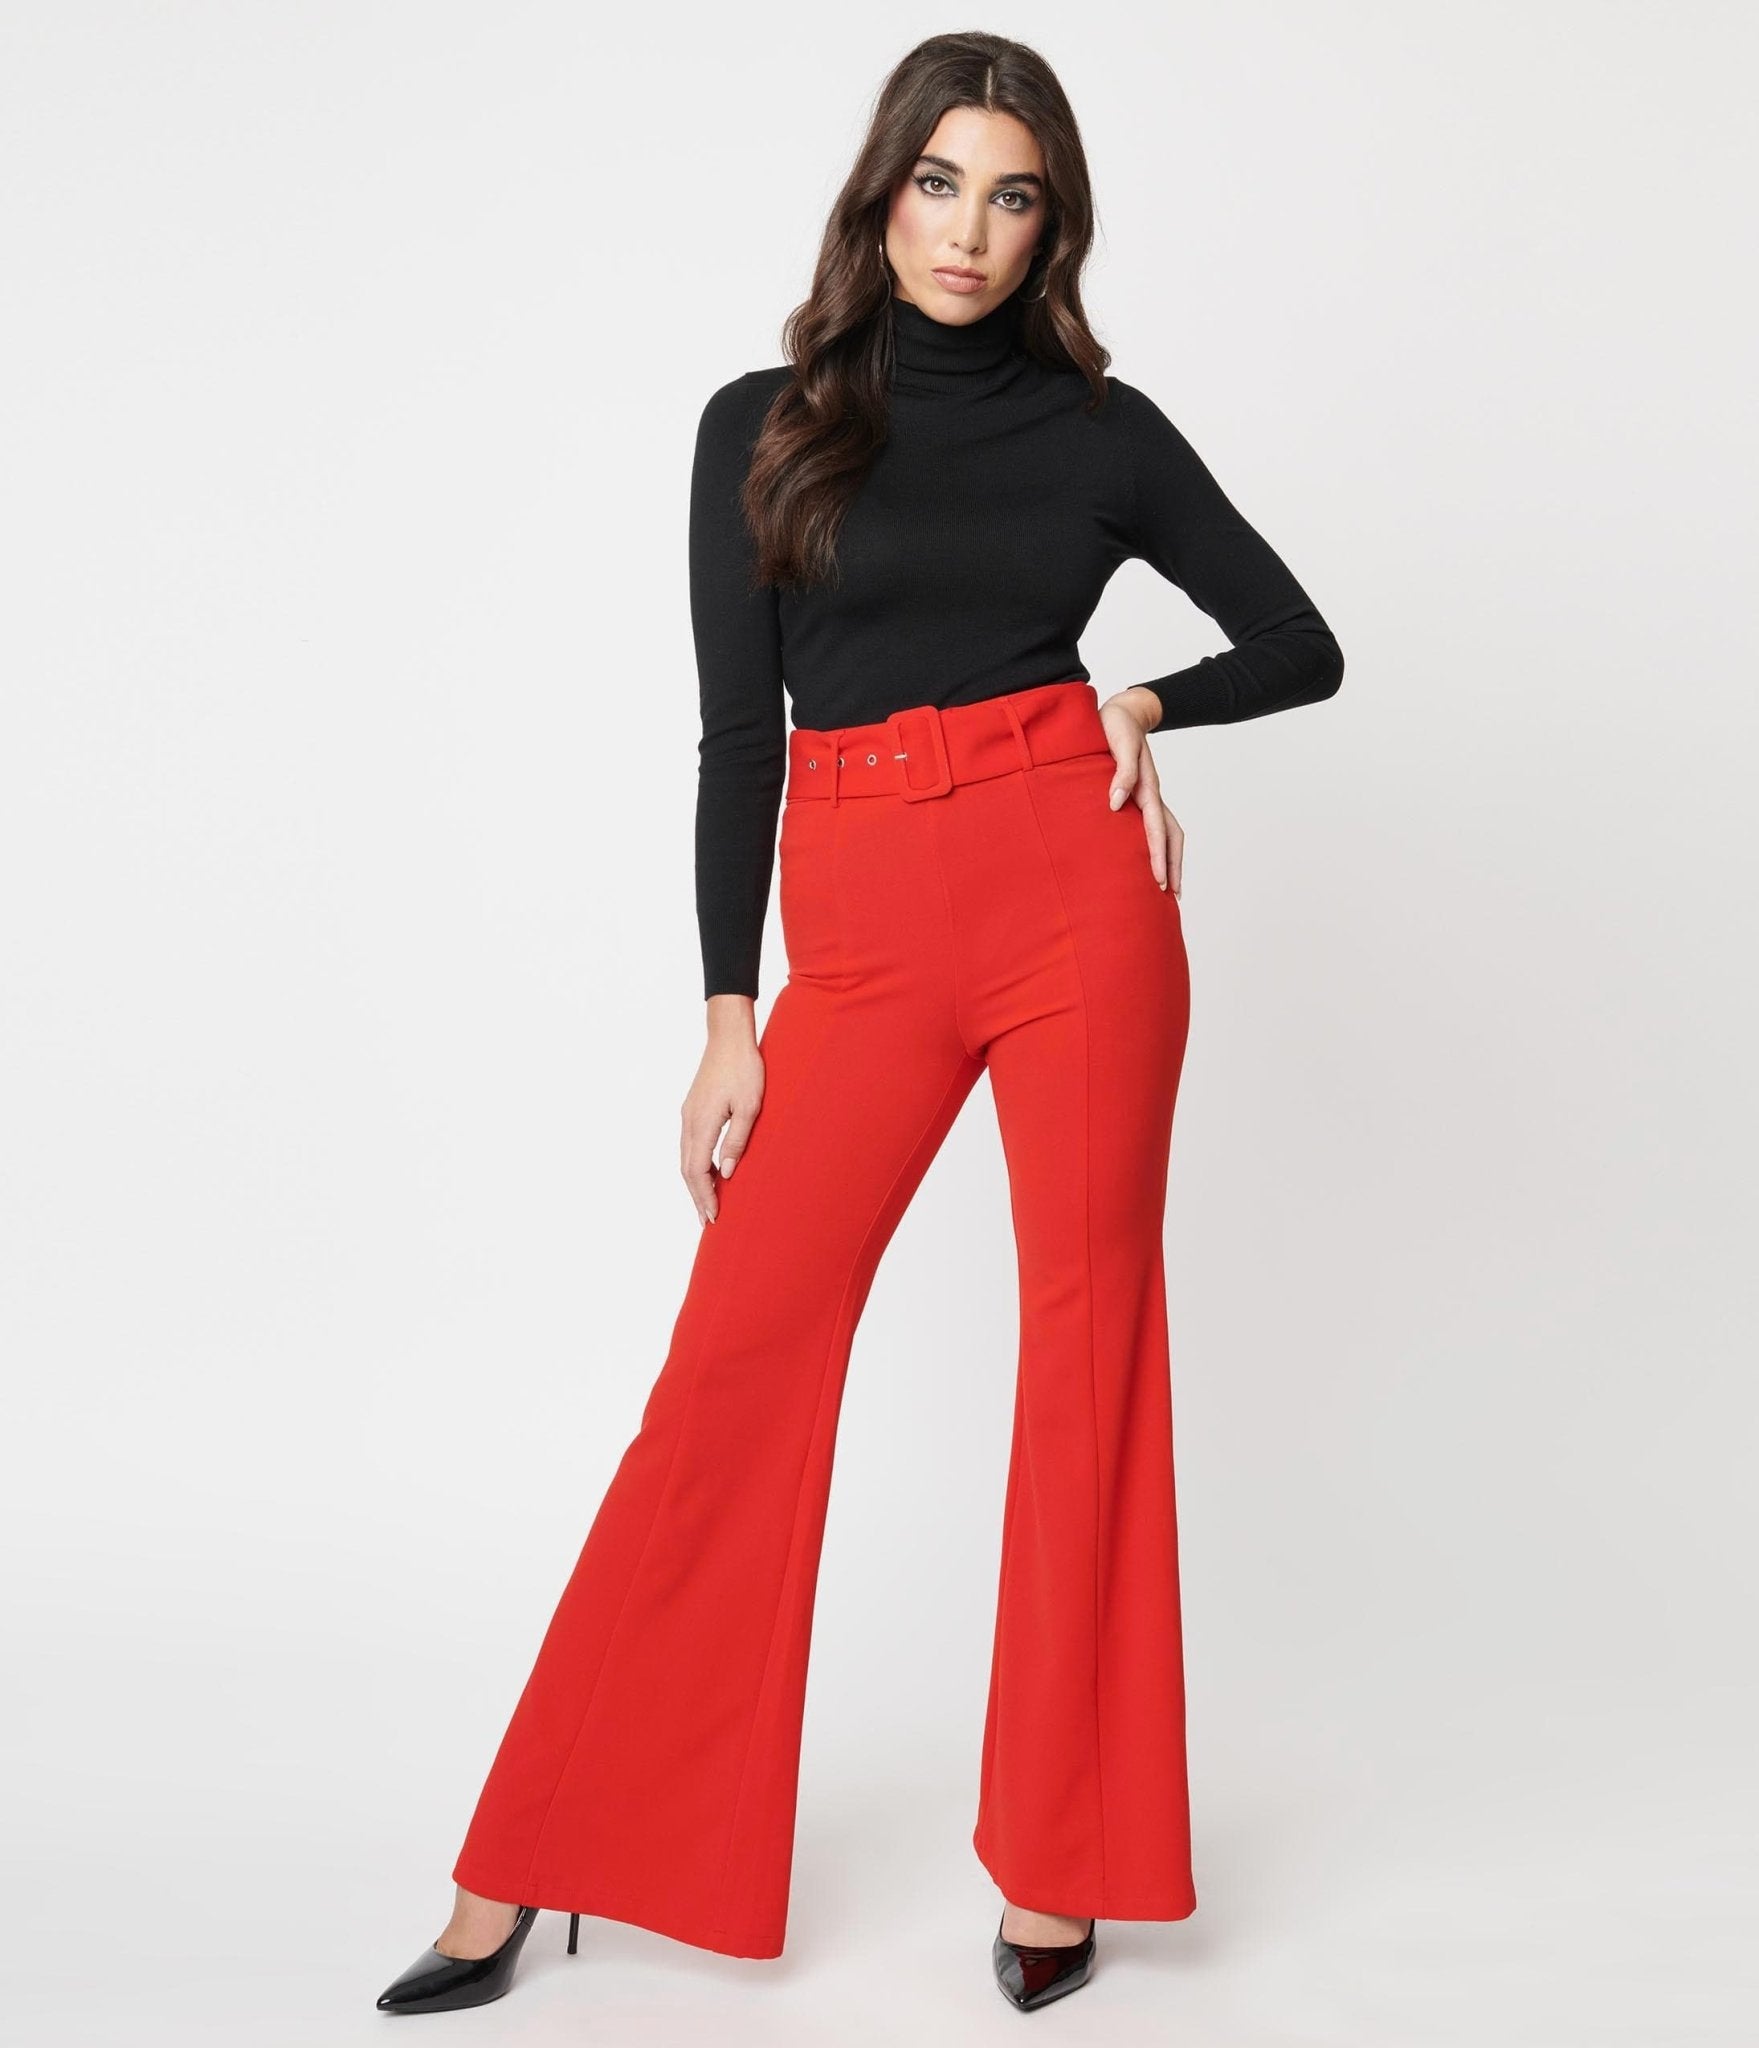 https://www.unique-vintage.com/cdn/shop/products/red-belted-flare-pants-350006.jpg?v=1703097085&width=1920